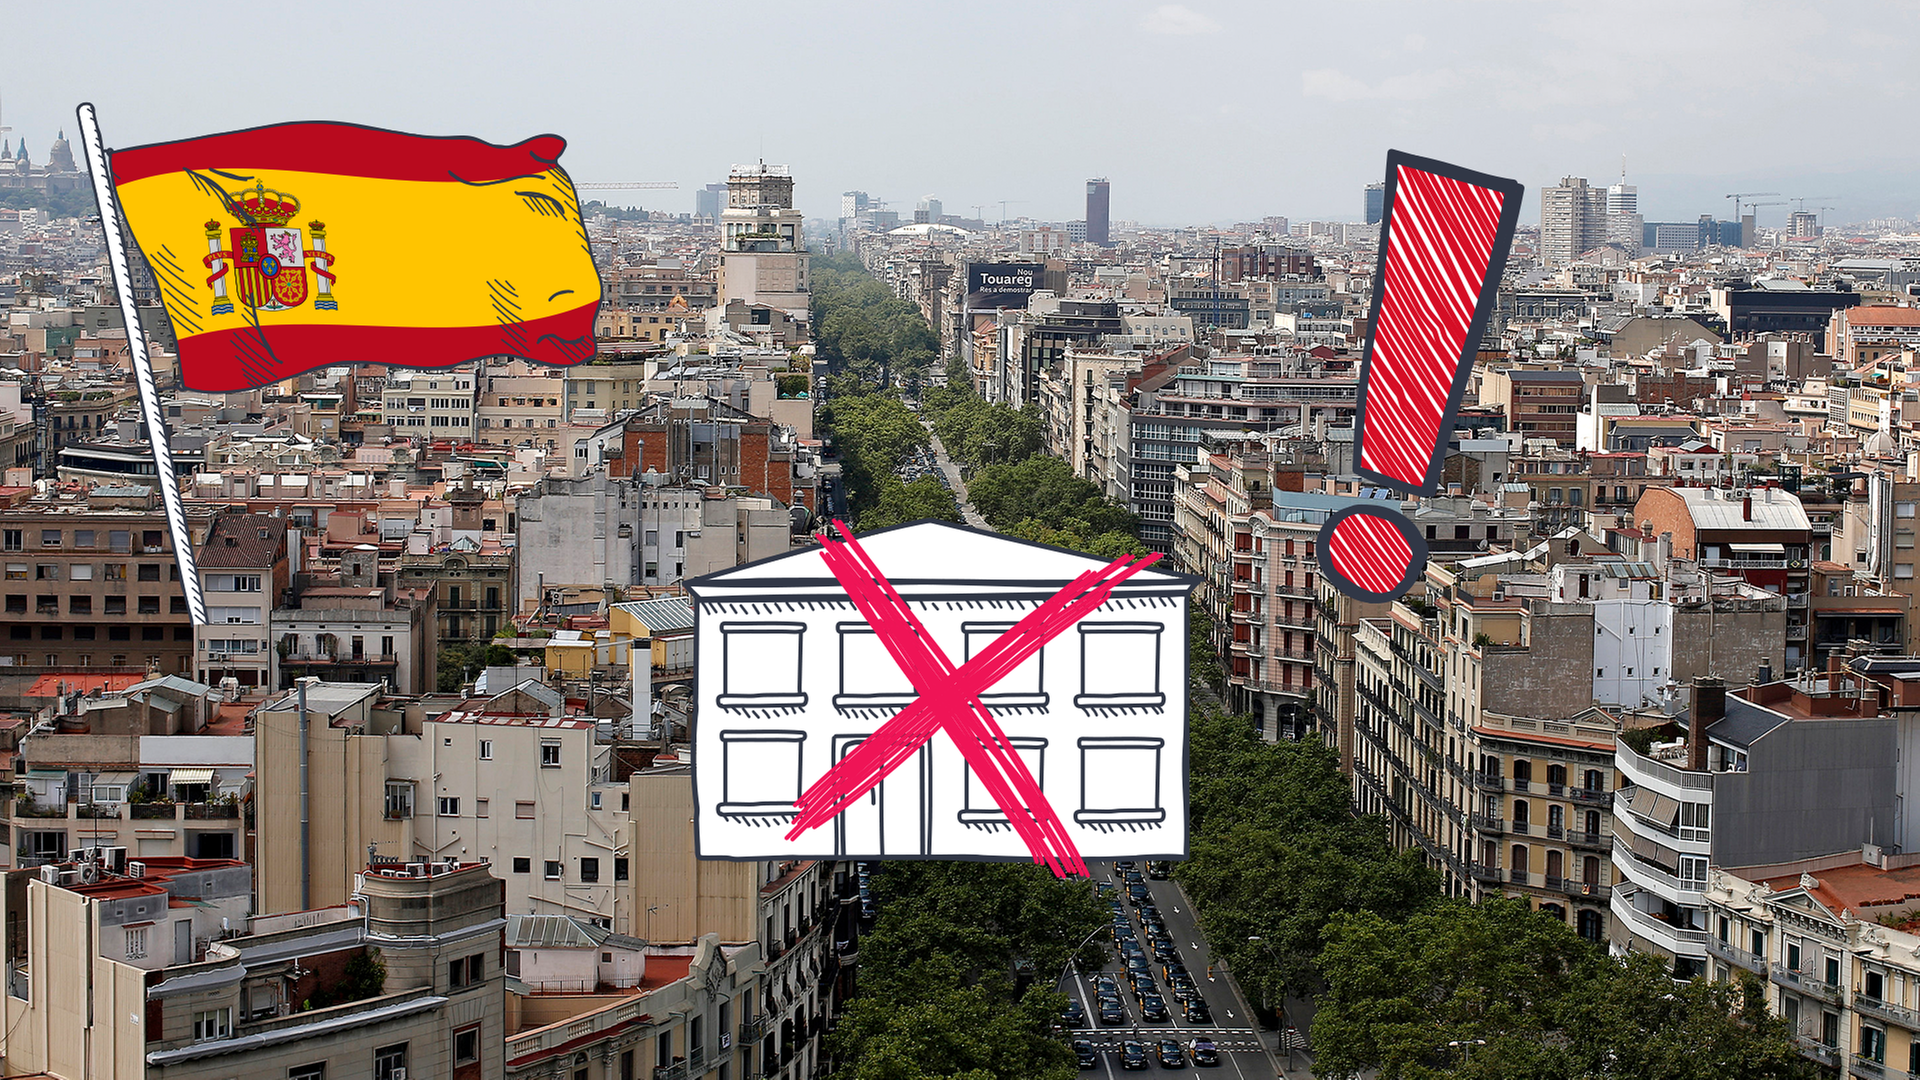 Stadtansicht Barcelona im Hintergrund, davor spanische Flagge, durchgestrichene Ferienwohnung und Ausrufezeichen